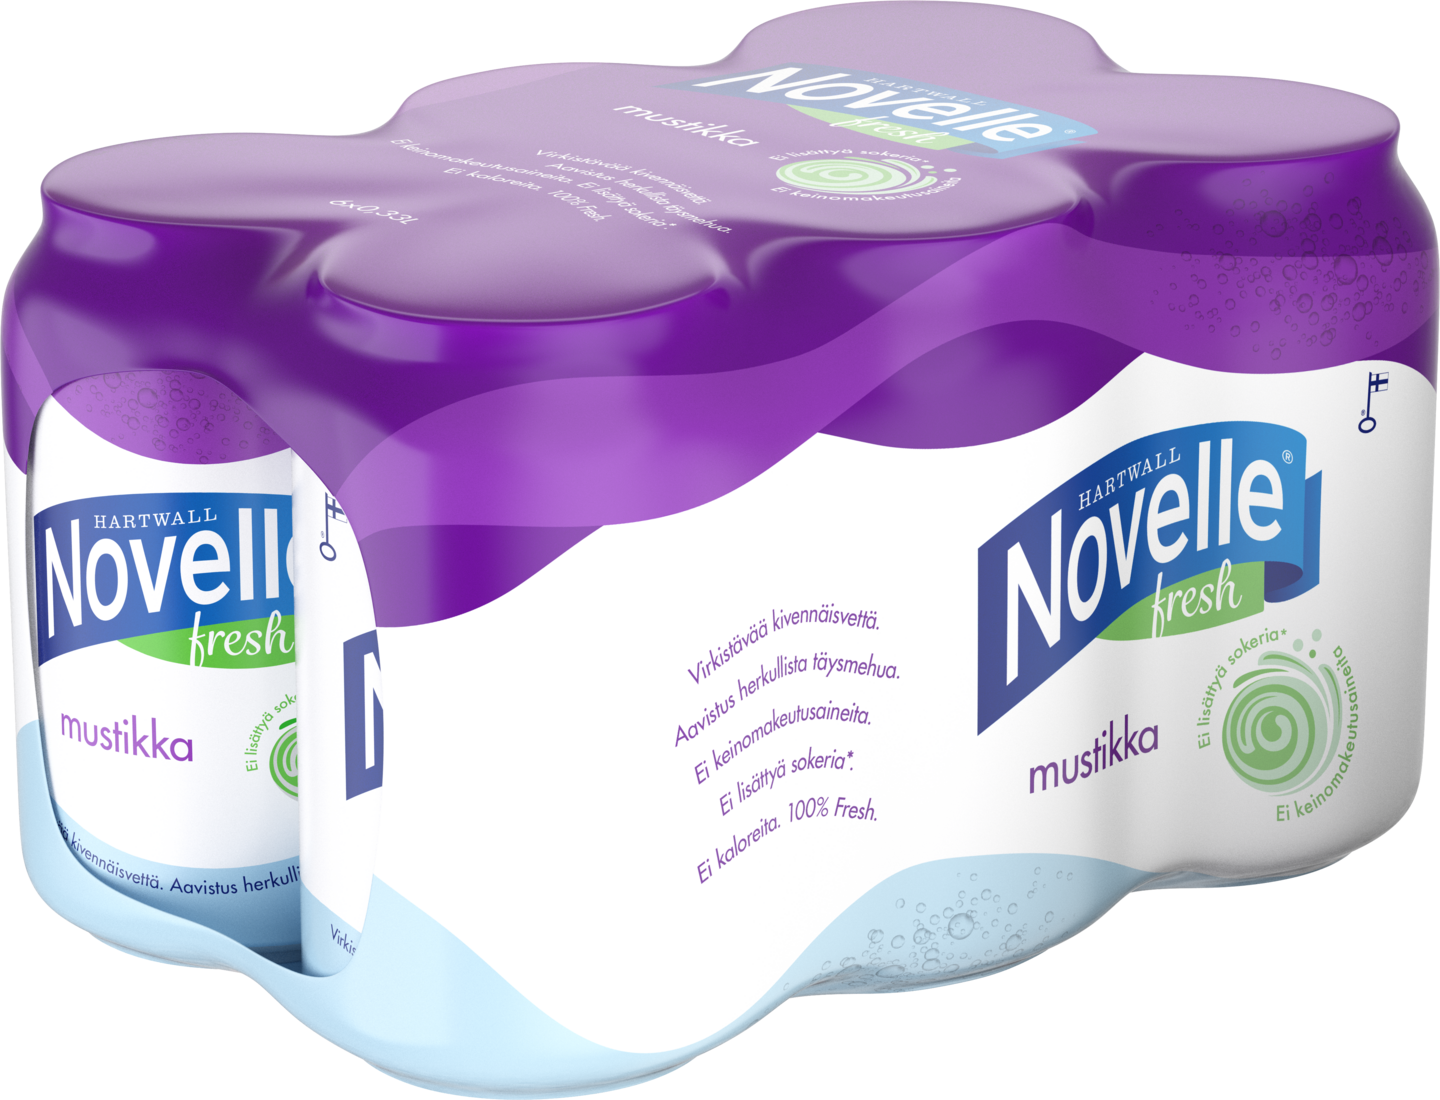 Hartwall Novelle Fresh mustikka 0,33l 6-pack